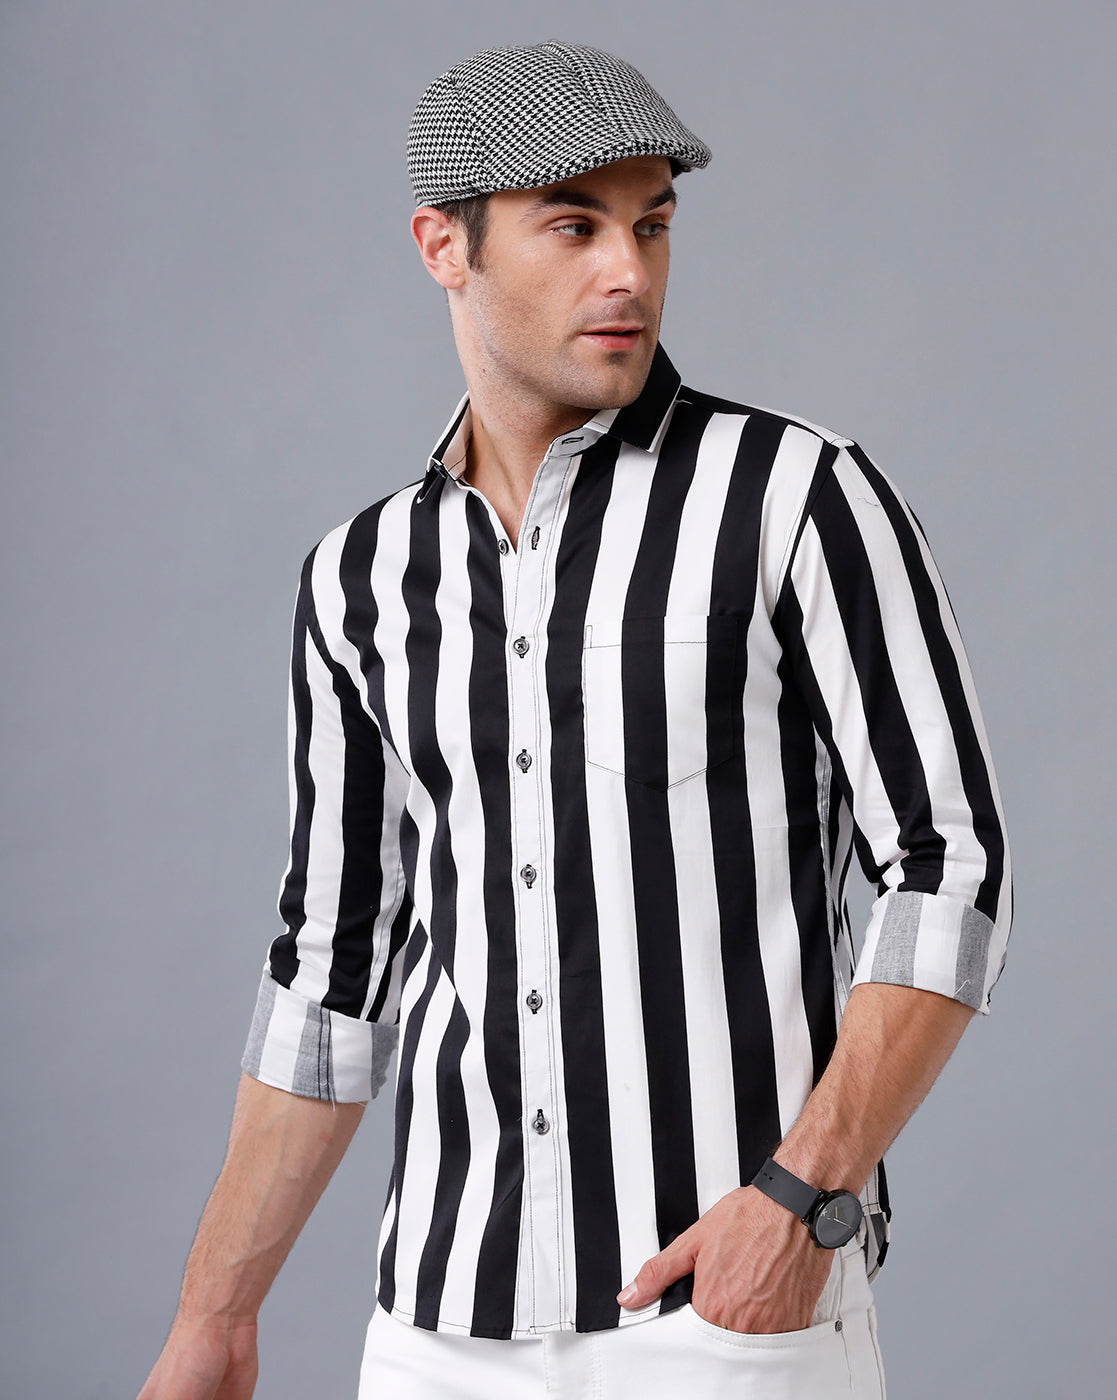 Vertical striped shirt mens